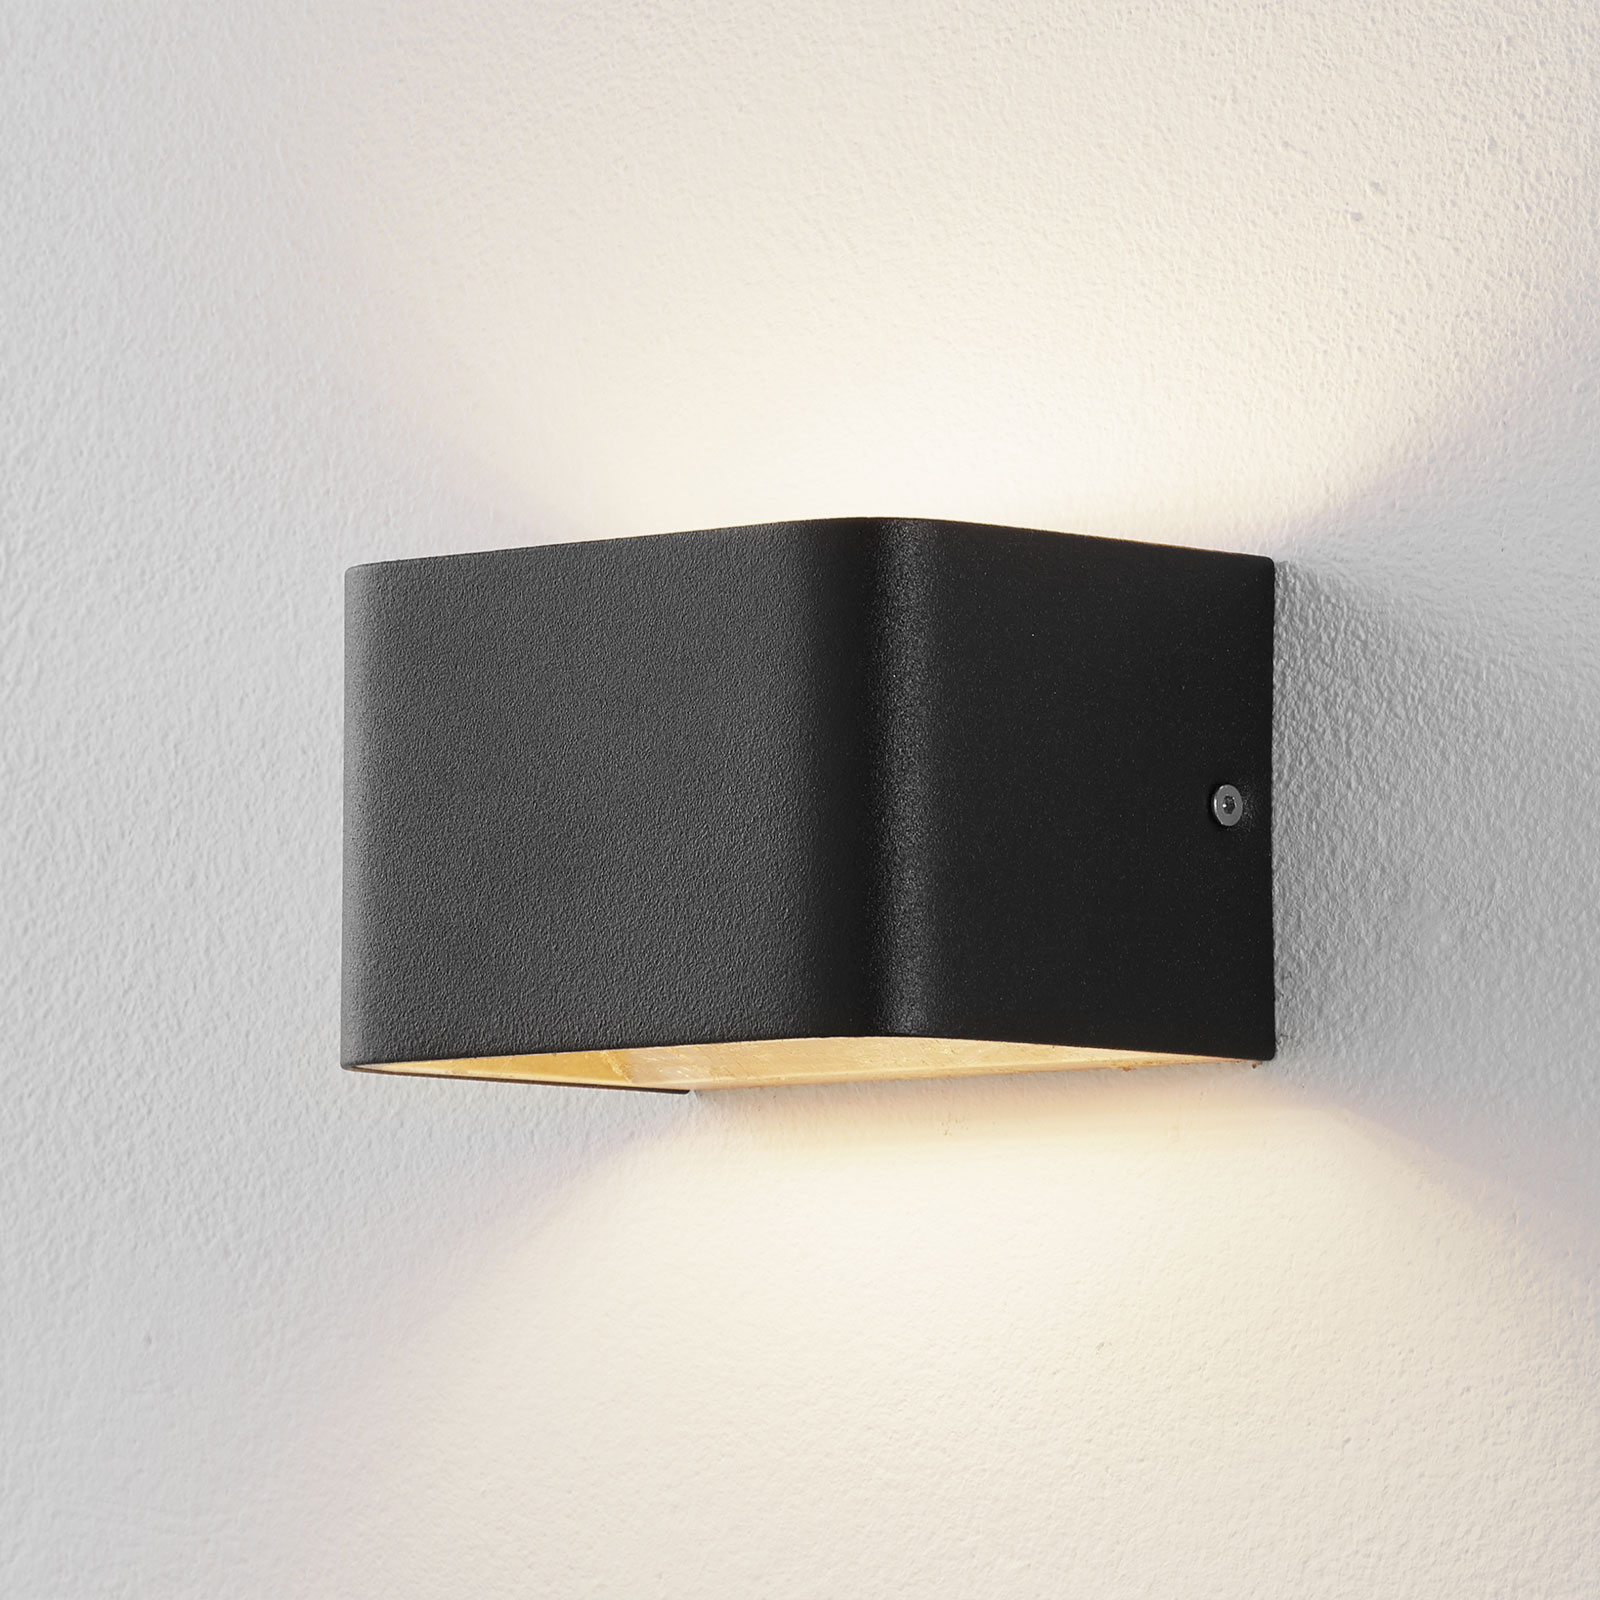 Lucande Sessa applique LED 13cm nero-oro